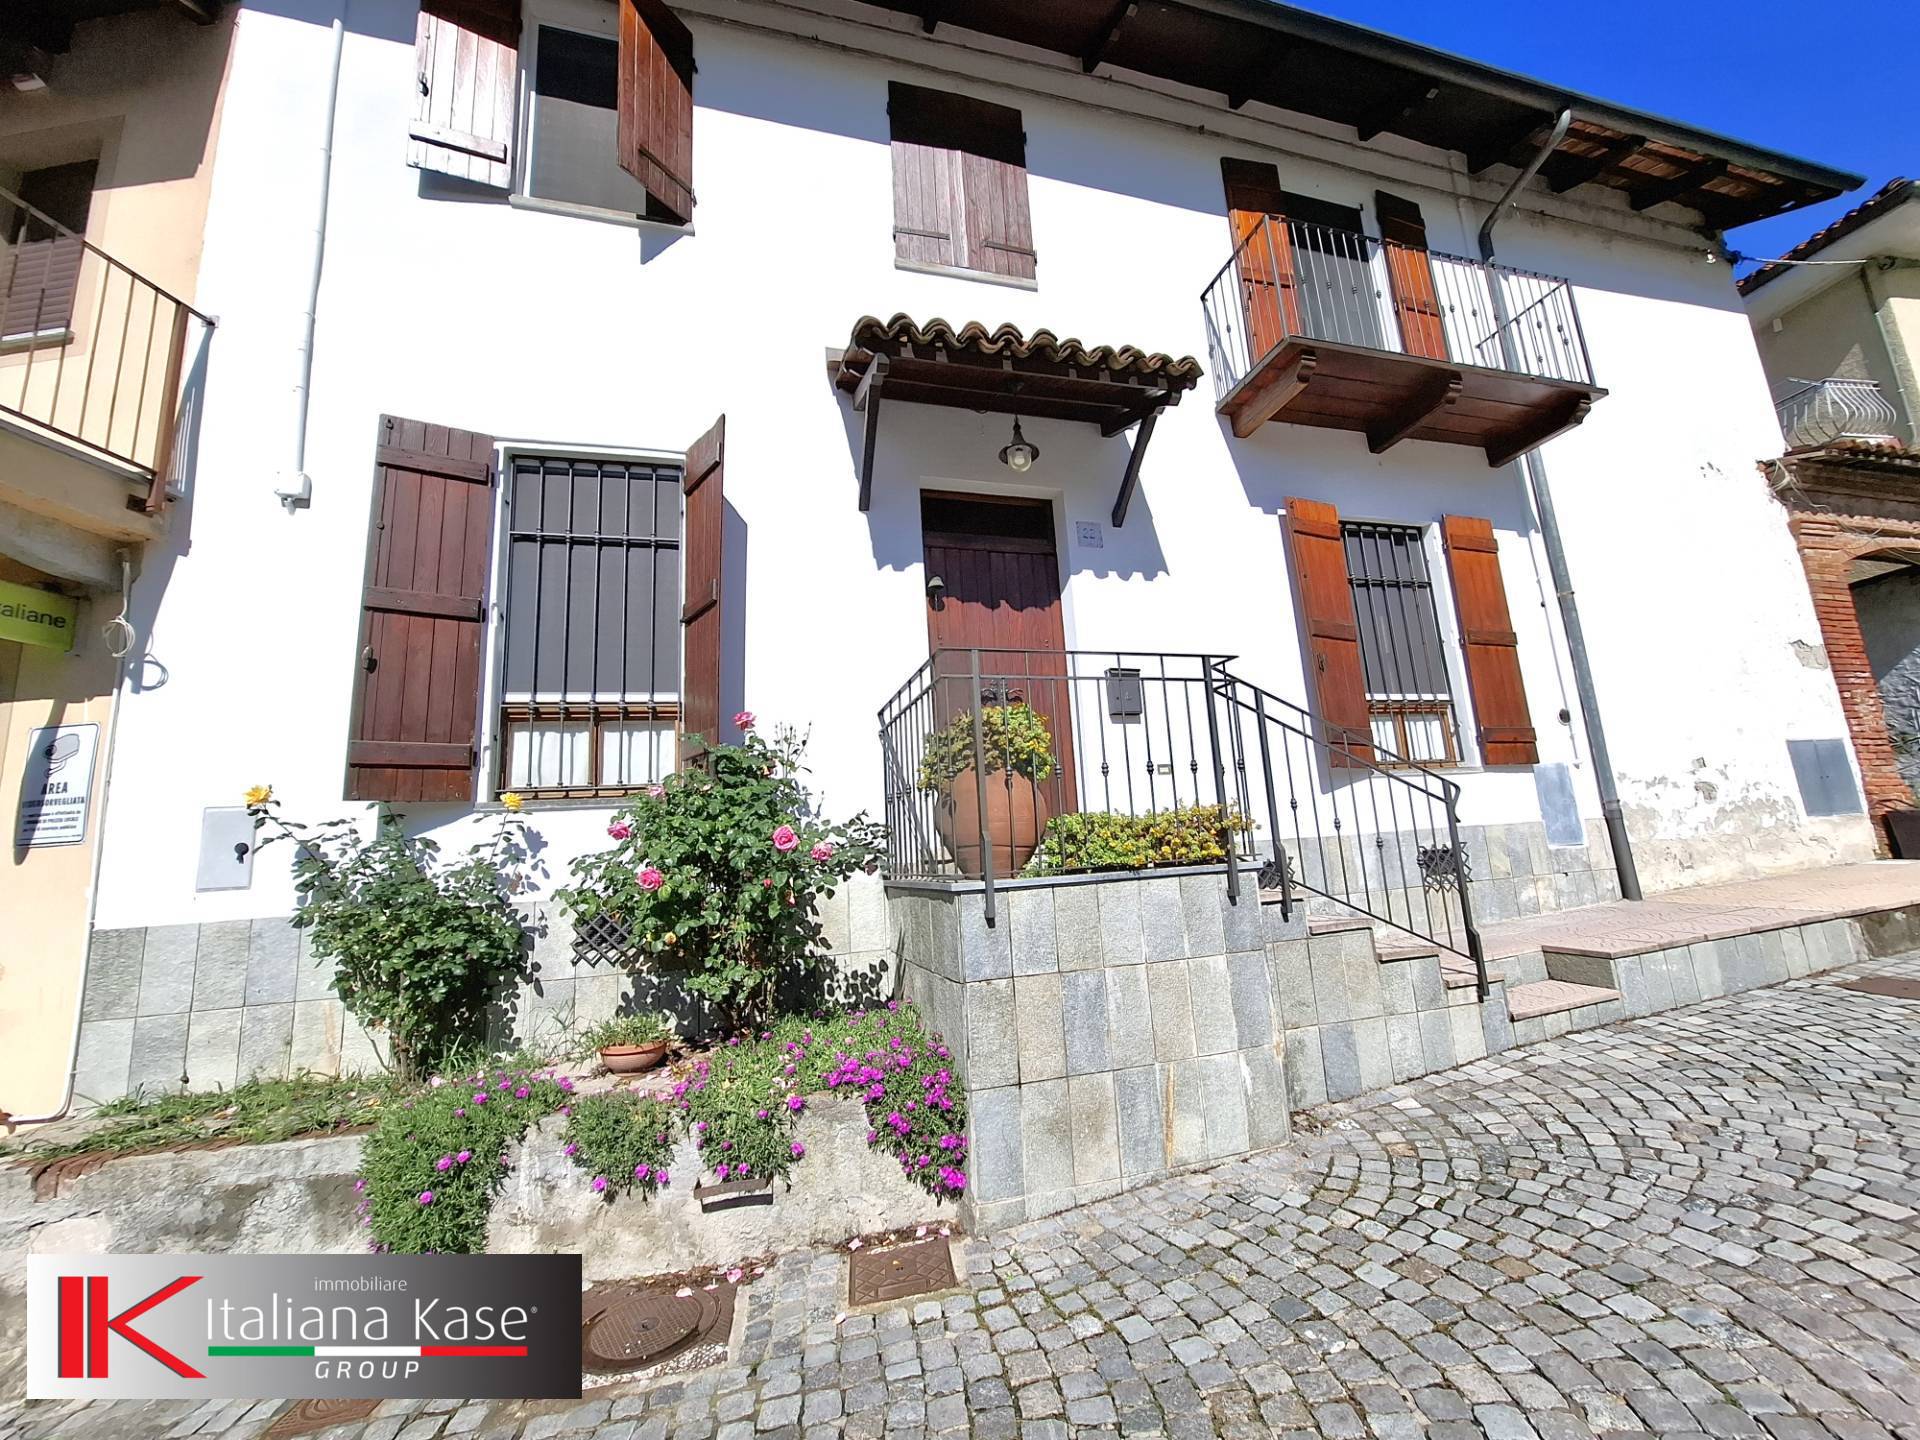 Casa indipendente arredata in affitto a Rivalba